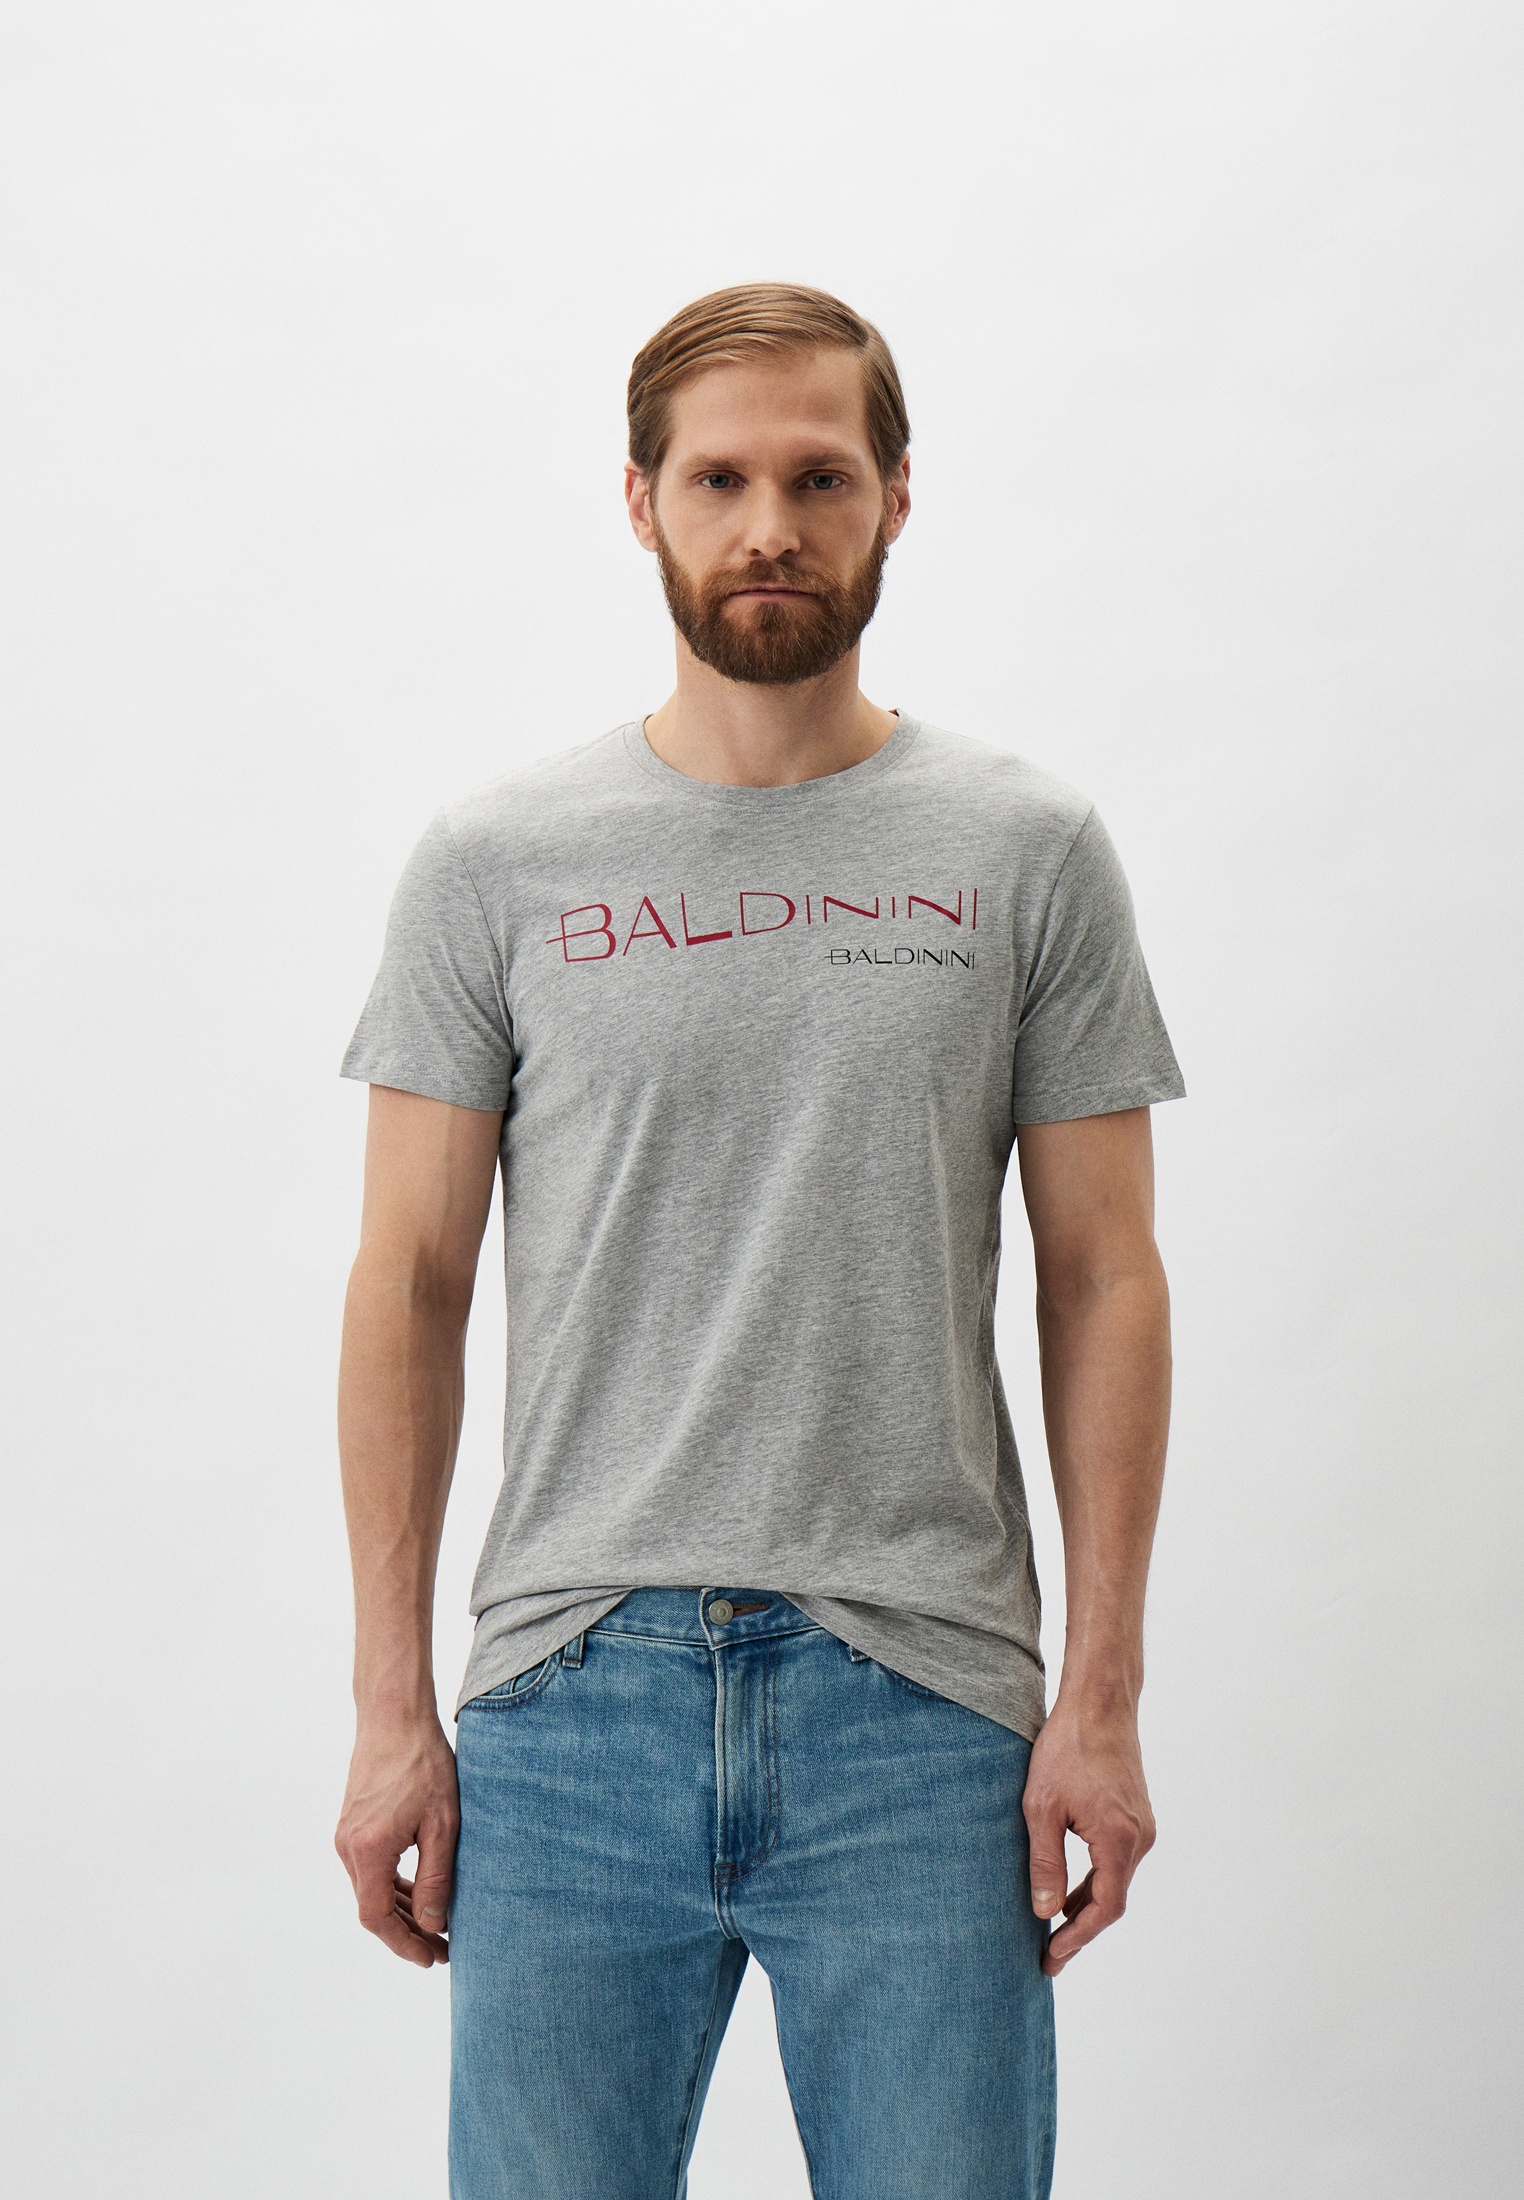 Мужская футболка Baldinini (Балдинини) B-OLM-M042: изображение 1